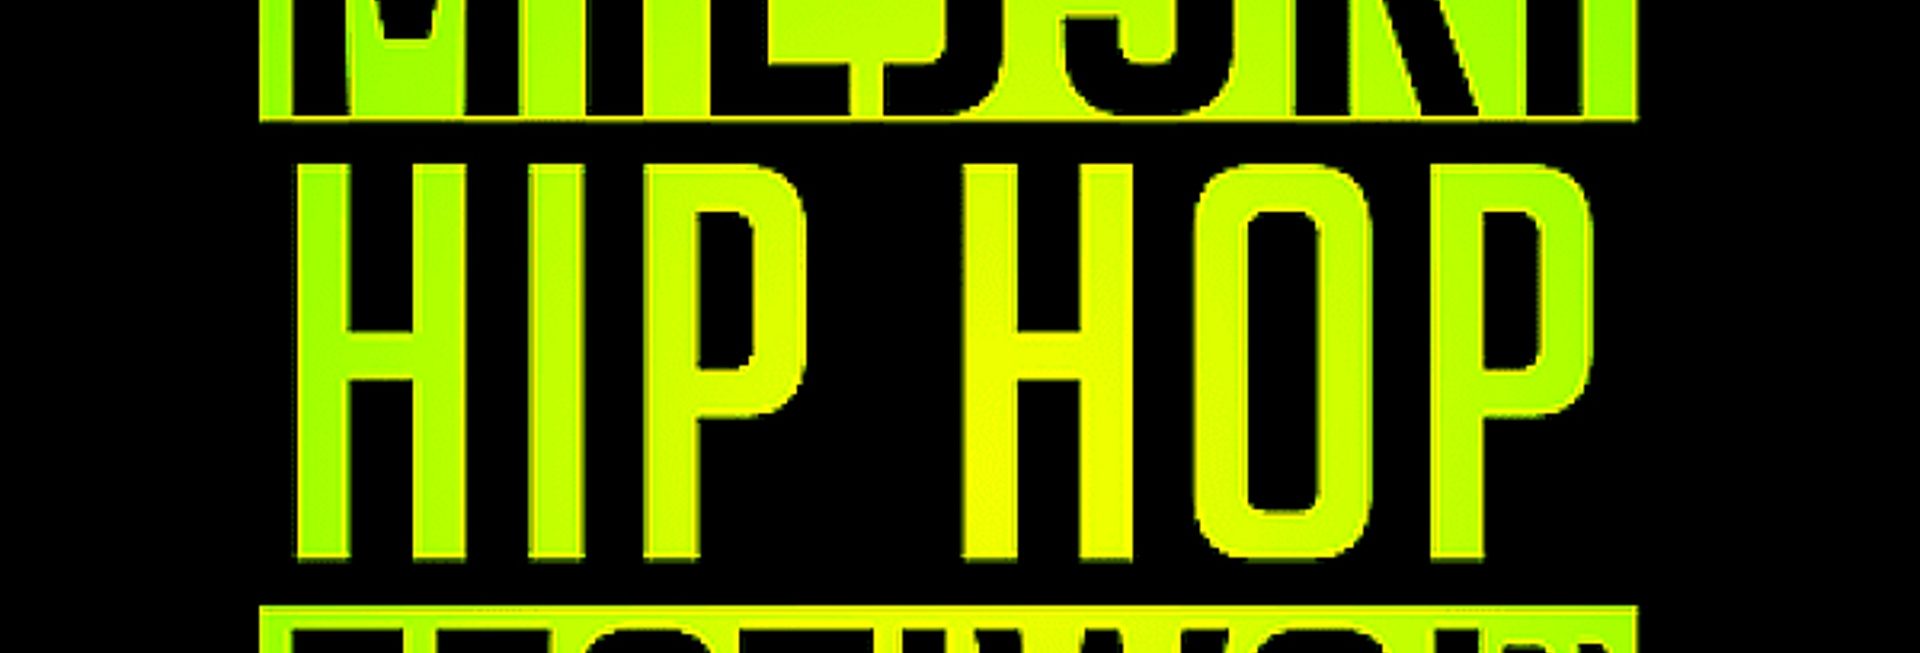 Plakat zapraszający do Giżycka na Miejski Hip Hop Festiwal - Giżycko 2020. Cały plakat w czarnym tle z napisem na zielonym tle Miejski Hip Hop Festiwal 2020. 